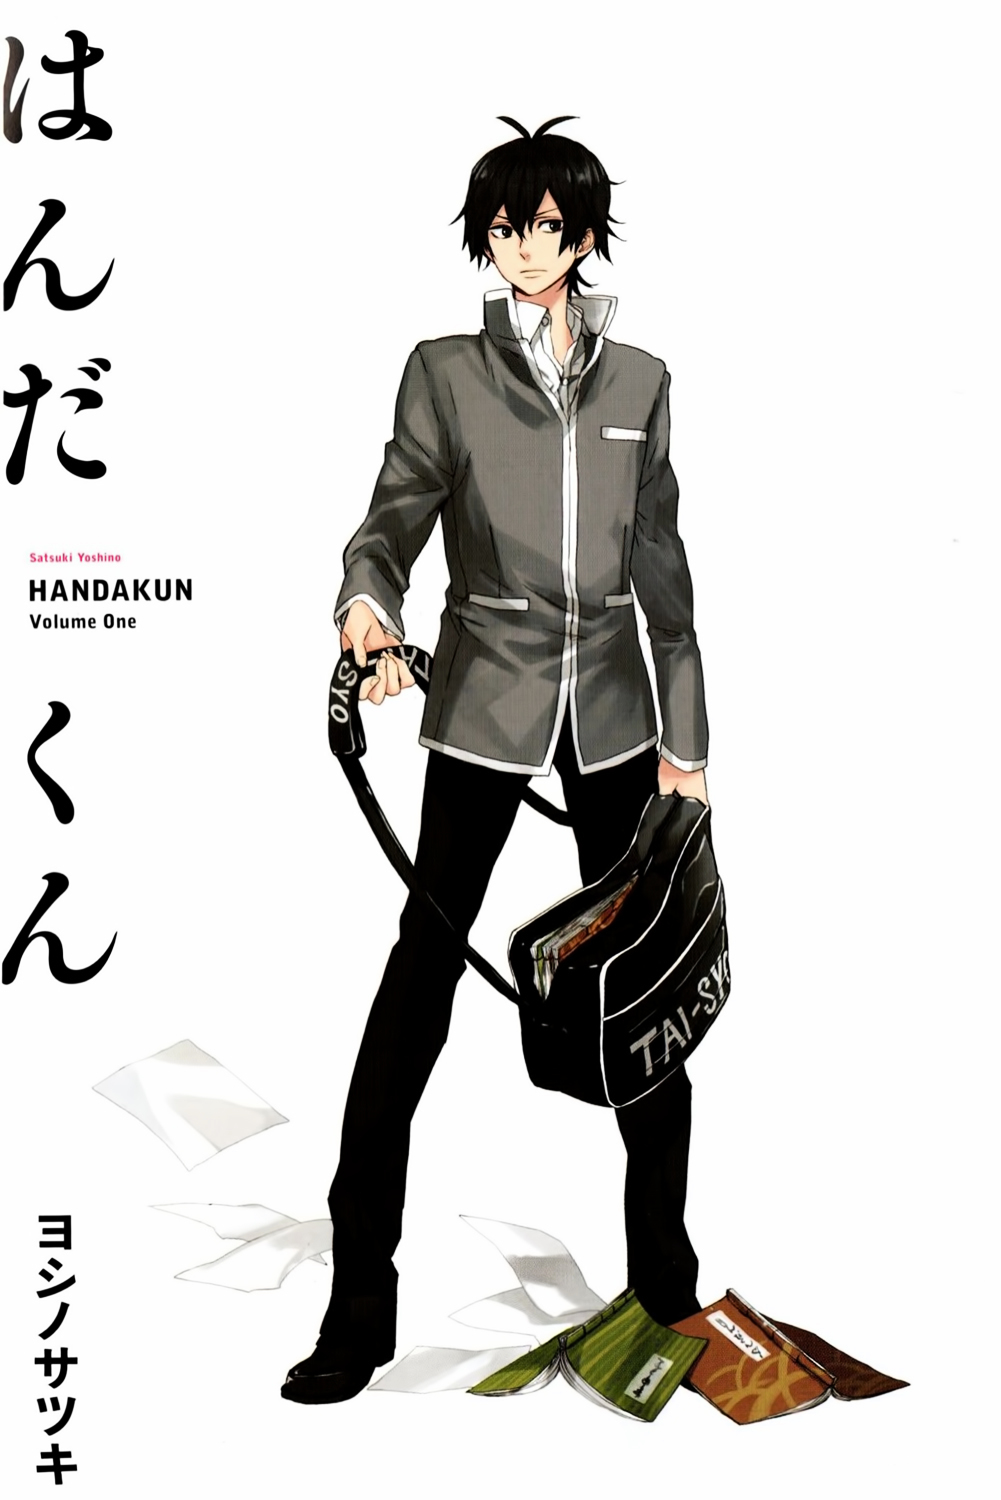 Prequela de Barakamon, Handa-kun ganha adaptação para anime - Crunchyroll  Notícias